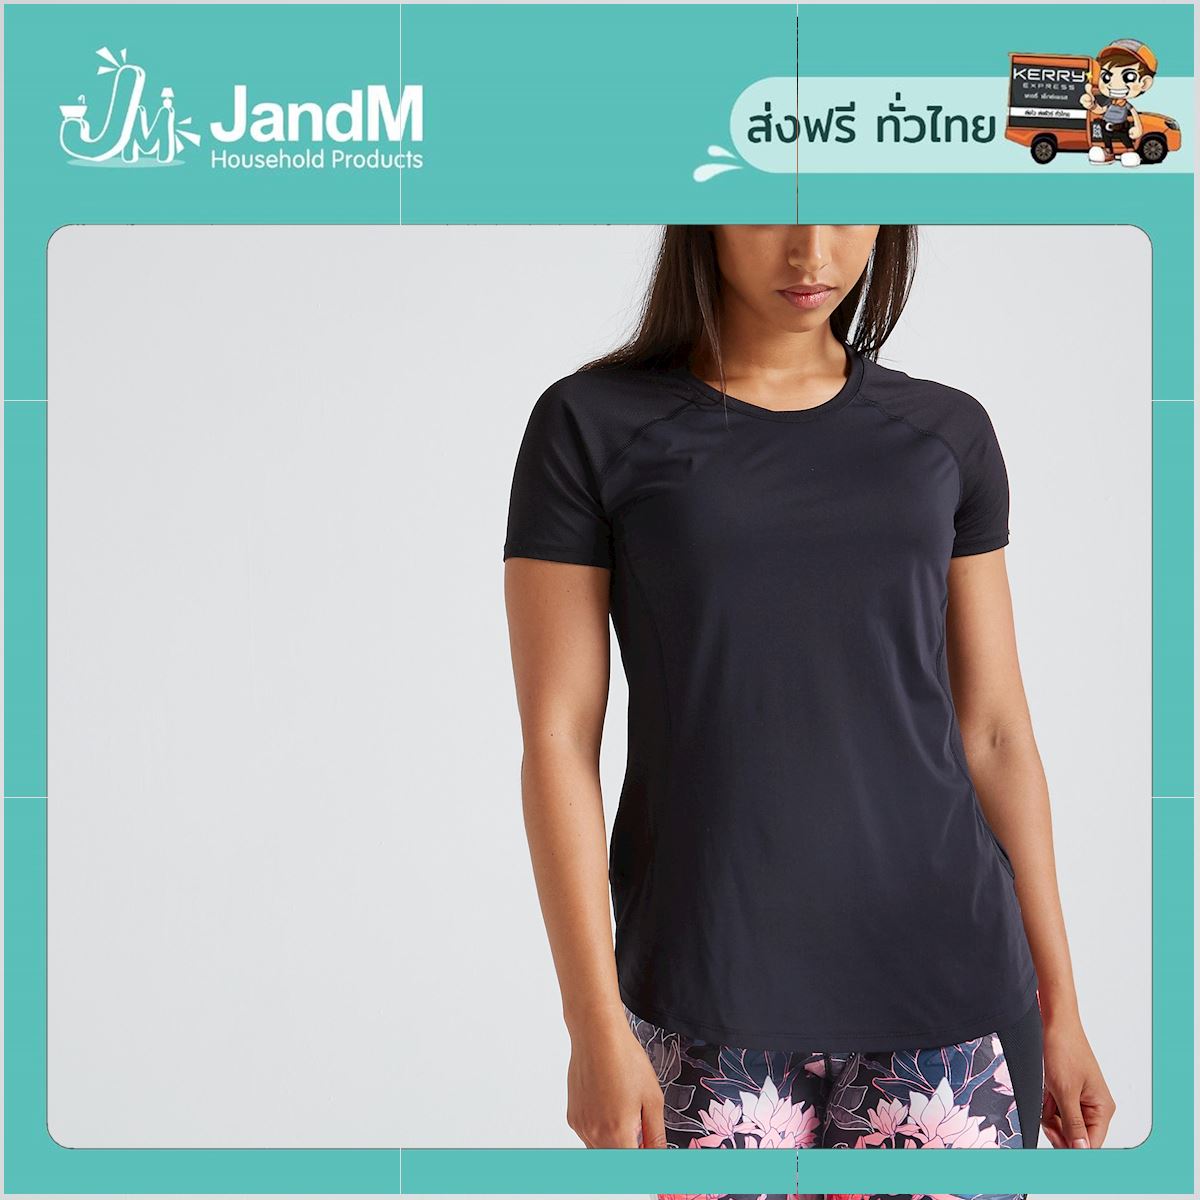 JandM เสื้อยืดผู้หญิงสำหรับใส่ออกกำลังกายแบบคาร์ดิโอรุ่น 500 (สีดำ) ส่งkerry มีเก็บเงินปลายทาง